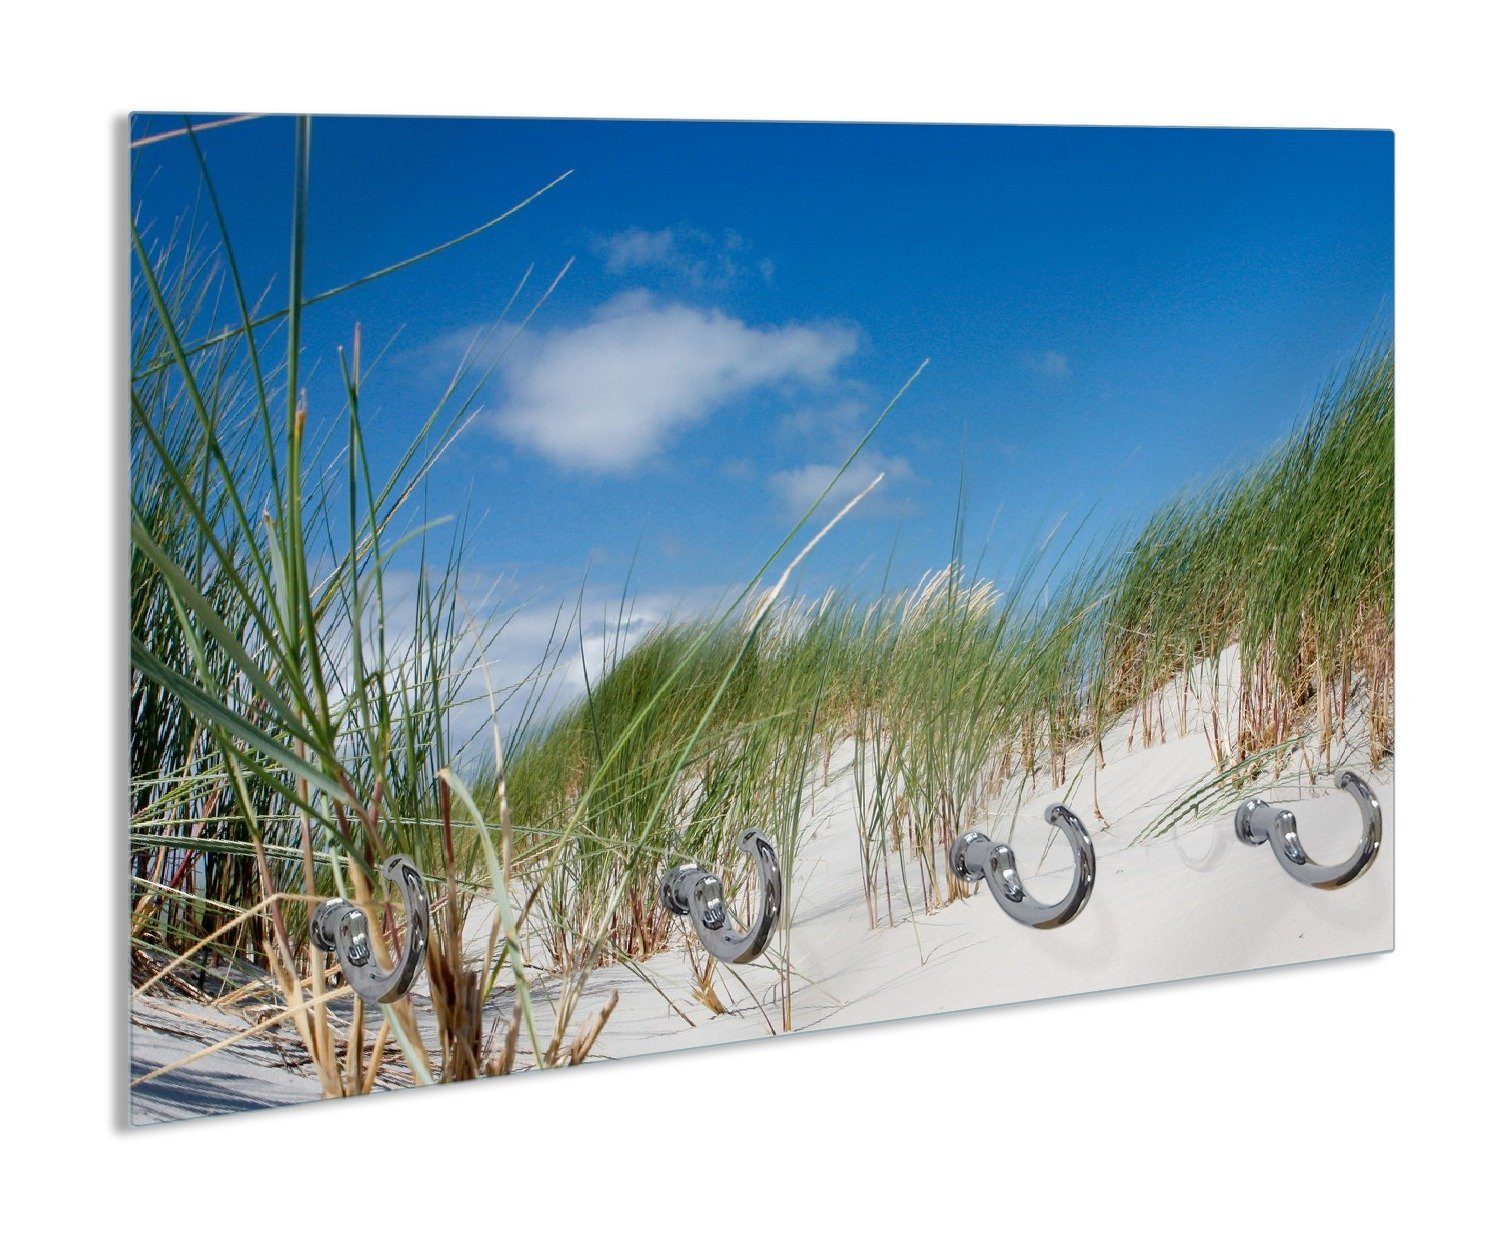 Wallario Handtuchhalter Düne am Strand unter blauem Himmel, aus Glas mit 4 Metallhaken